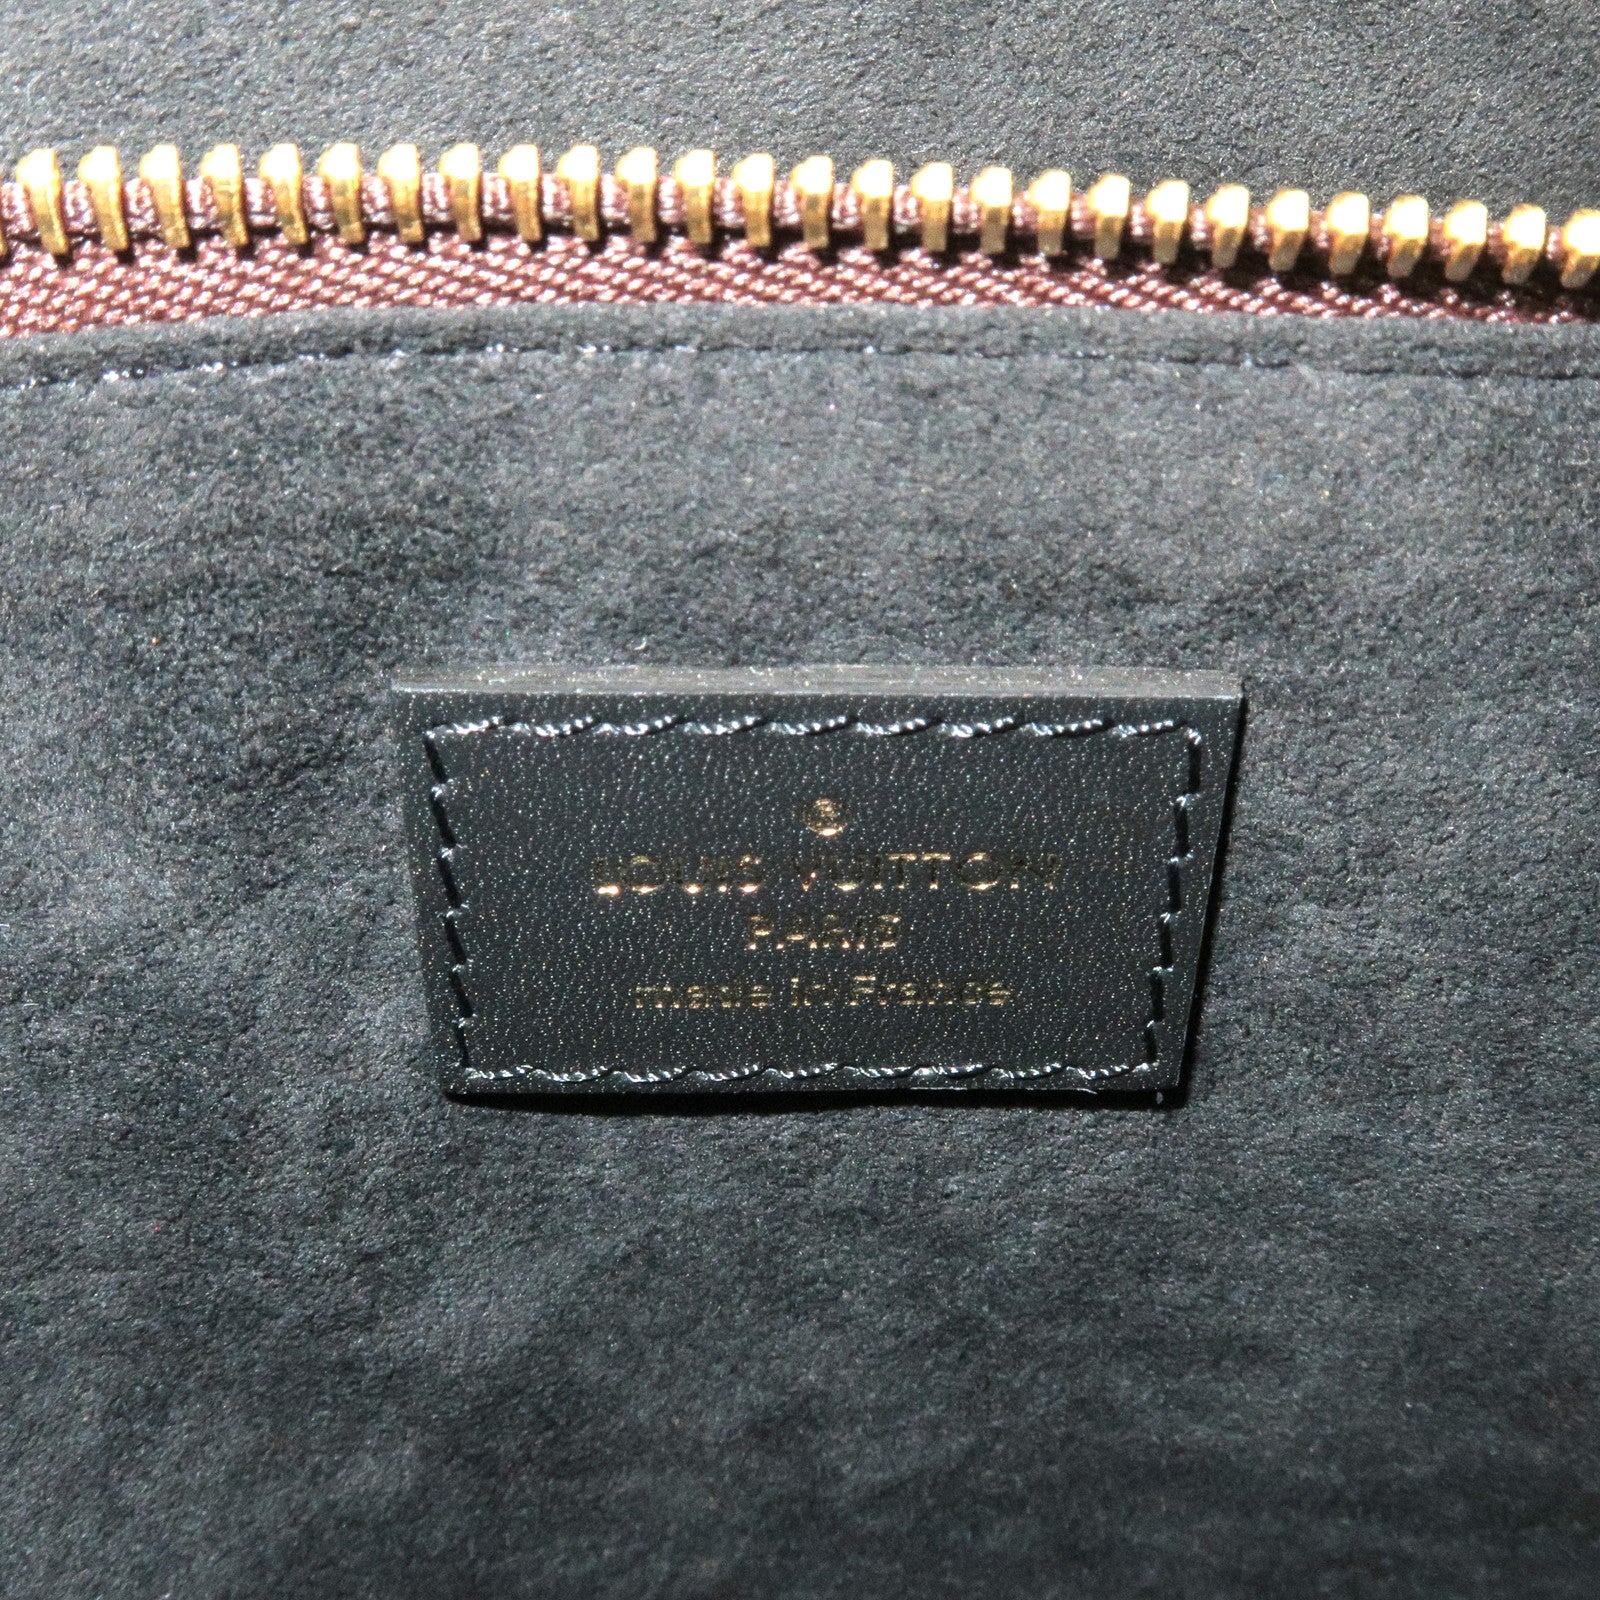 Louis Vuitton Monogram Canvas Malle Fleurs M41504– TC